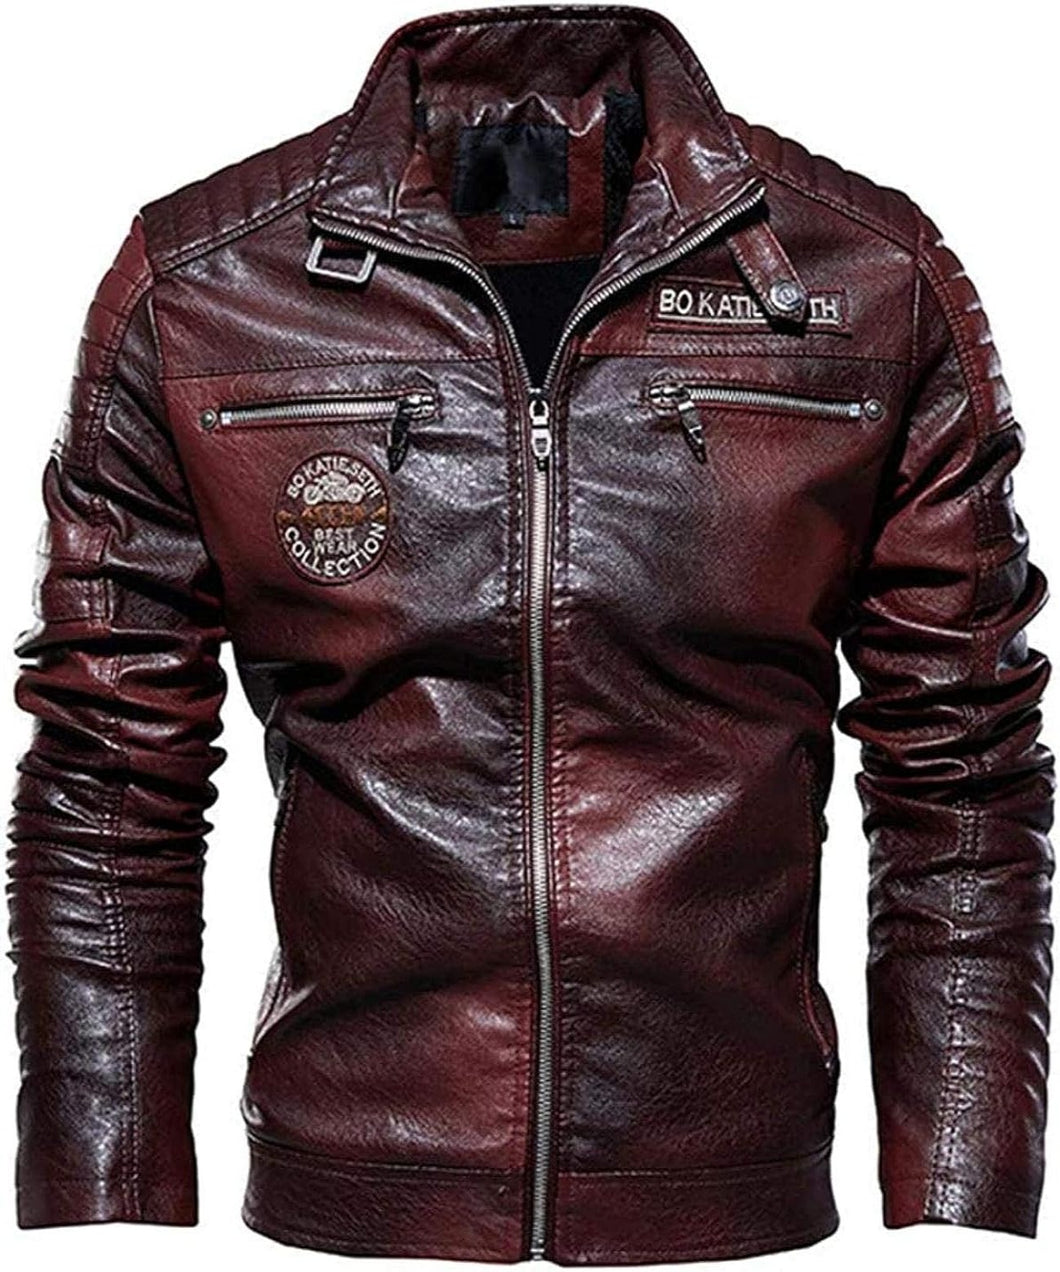 Men's Stylish Winter Windbreaker BIker Jacket